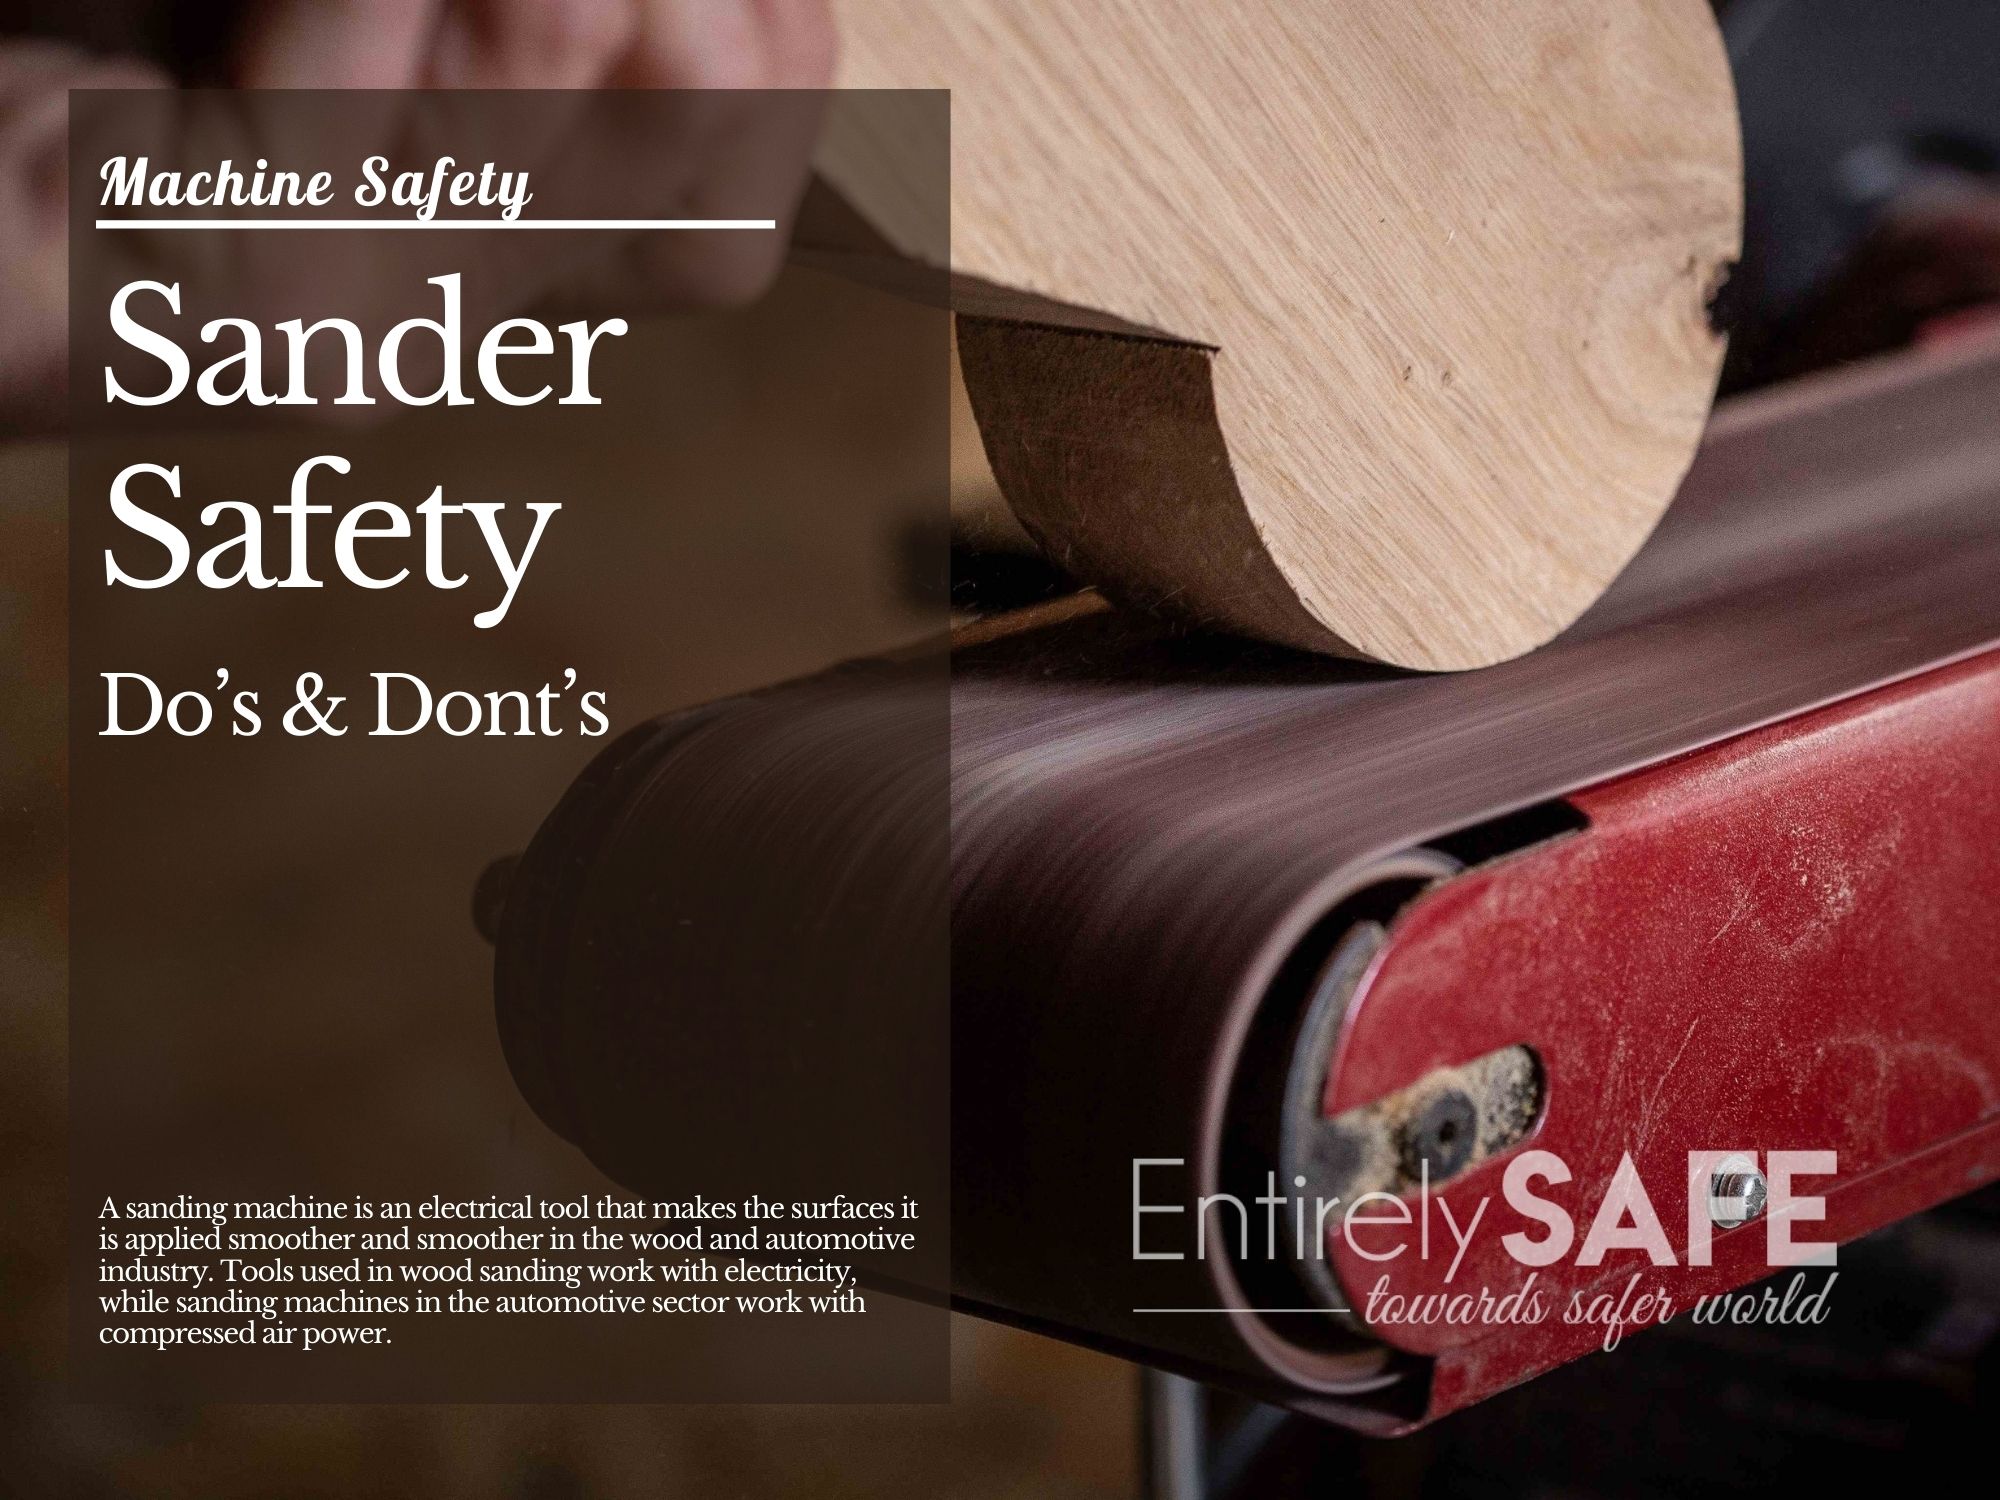 Sander Safety